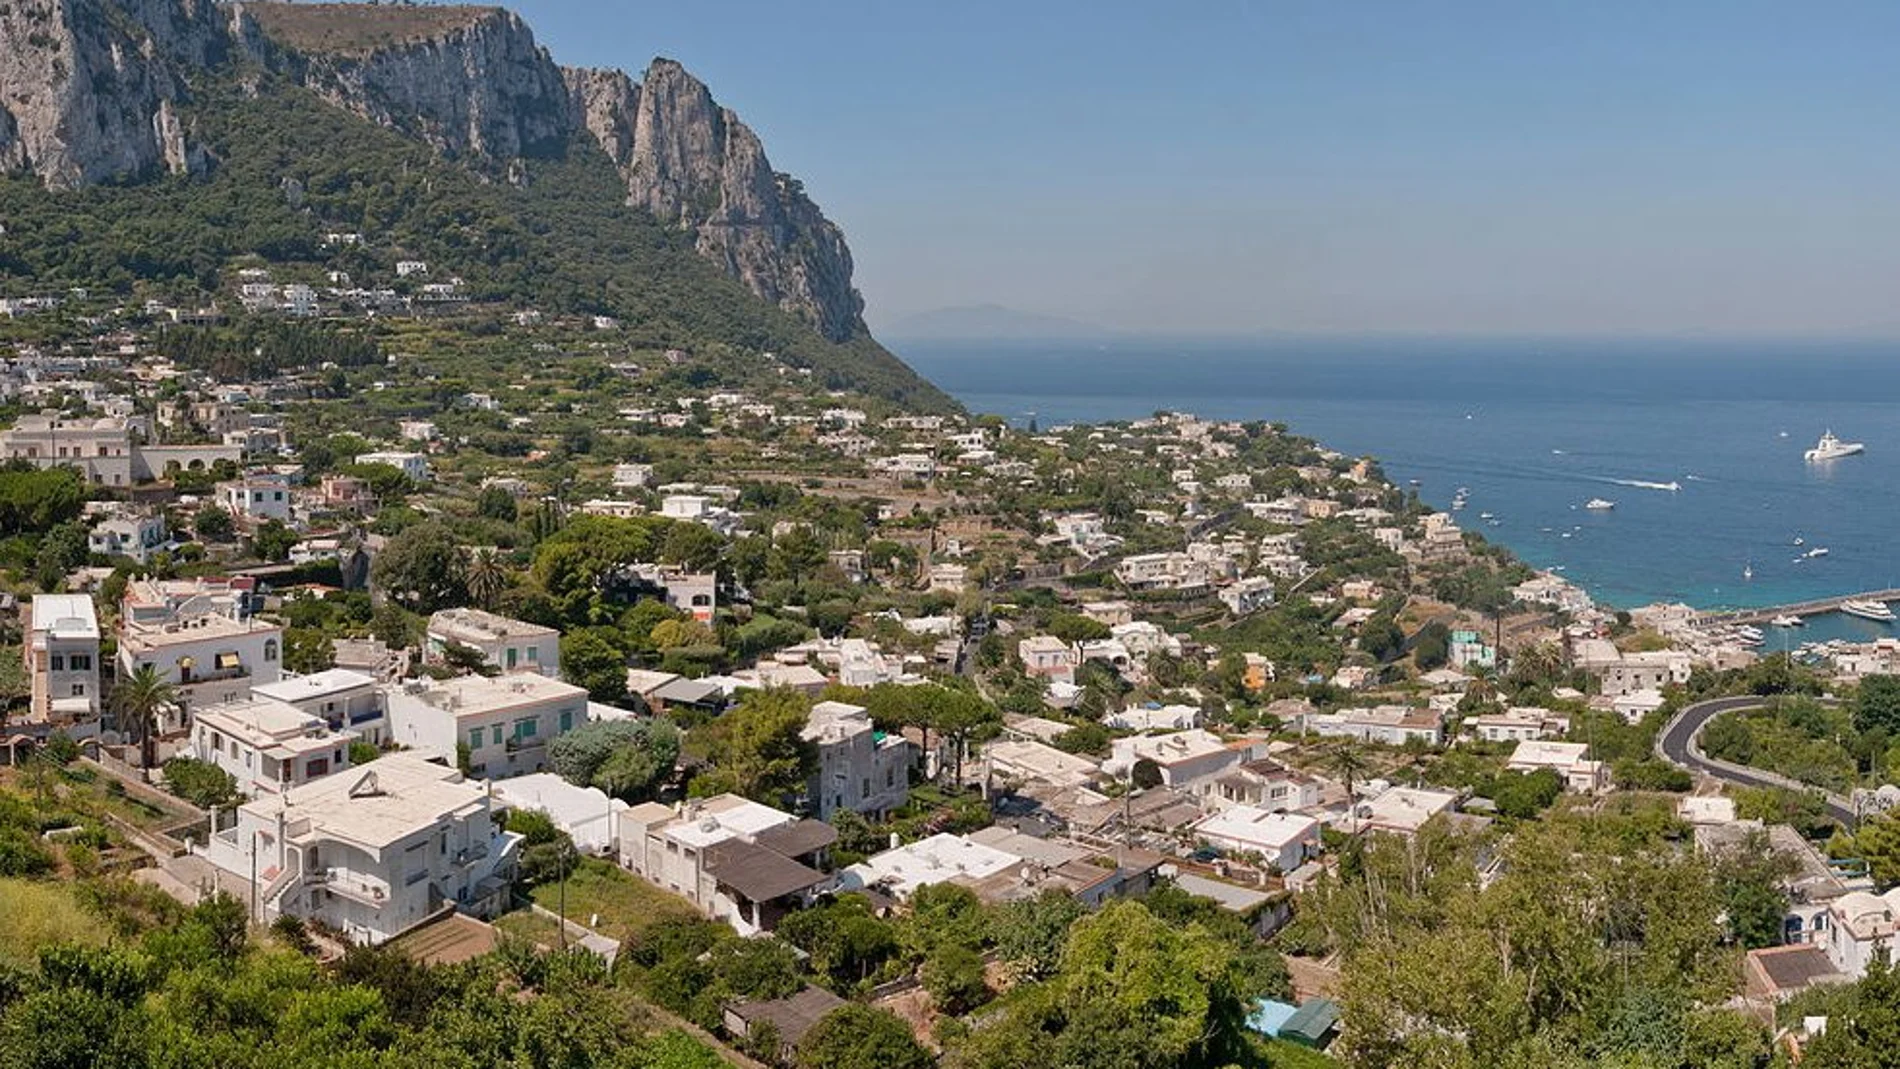 La isla de Capri ha servido de inspiración para artistas a lo largo de la historia, un escenario único que no hay que perder ocasión de visitar